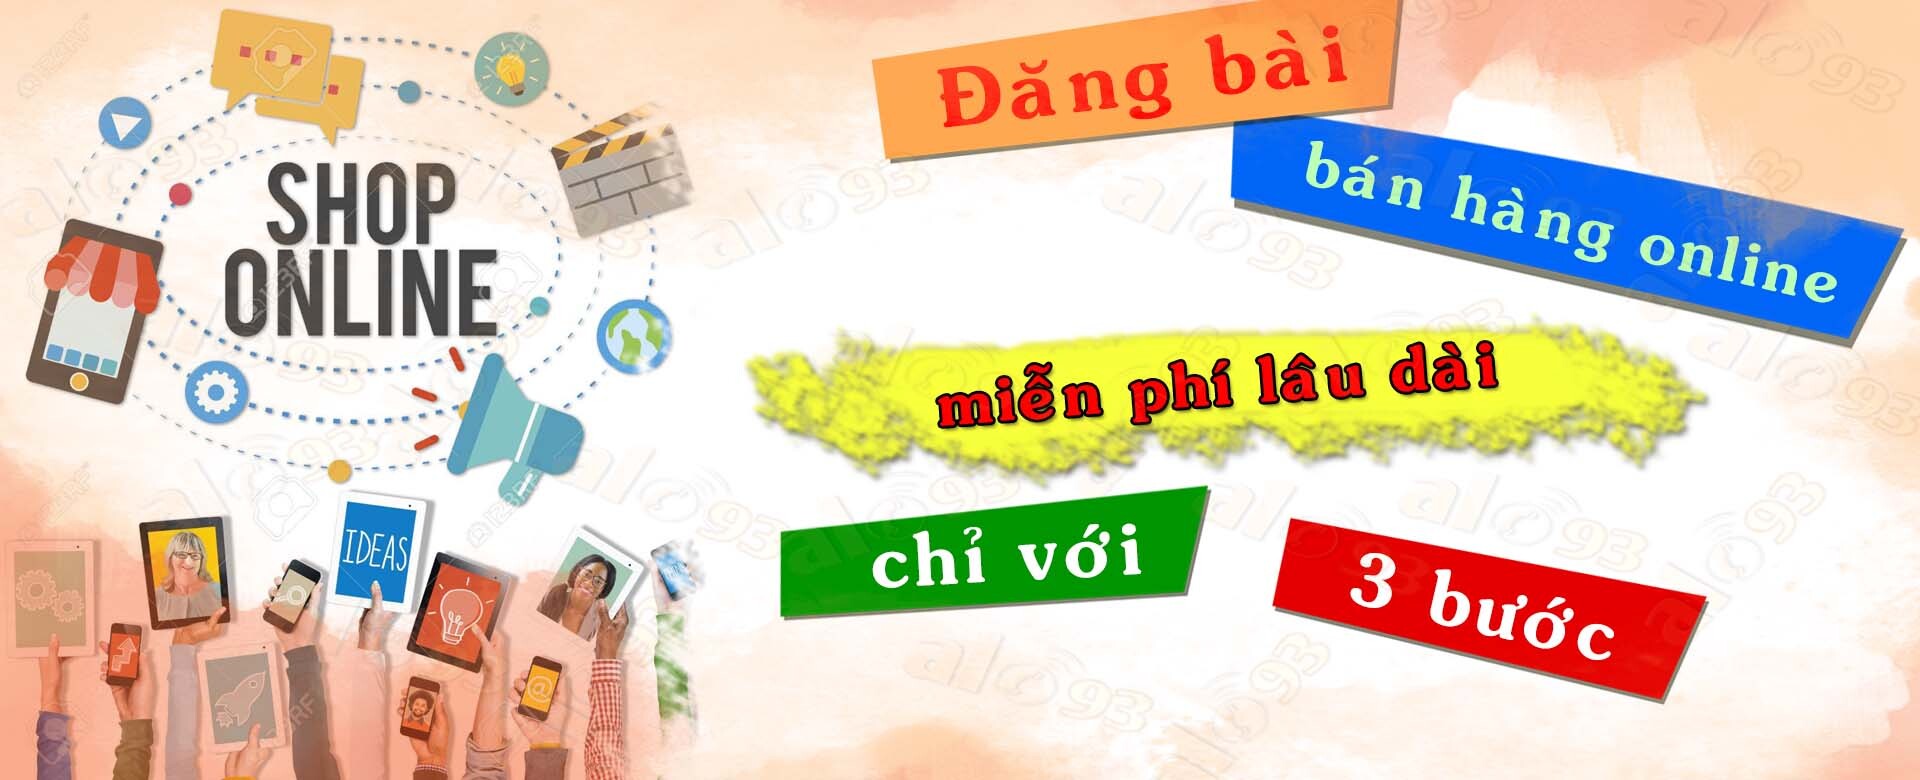 Alo93 - Mua bán online Đồng xoài - Bình Phước